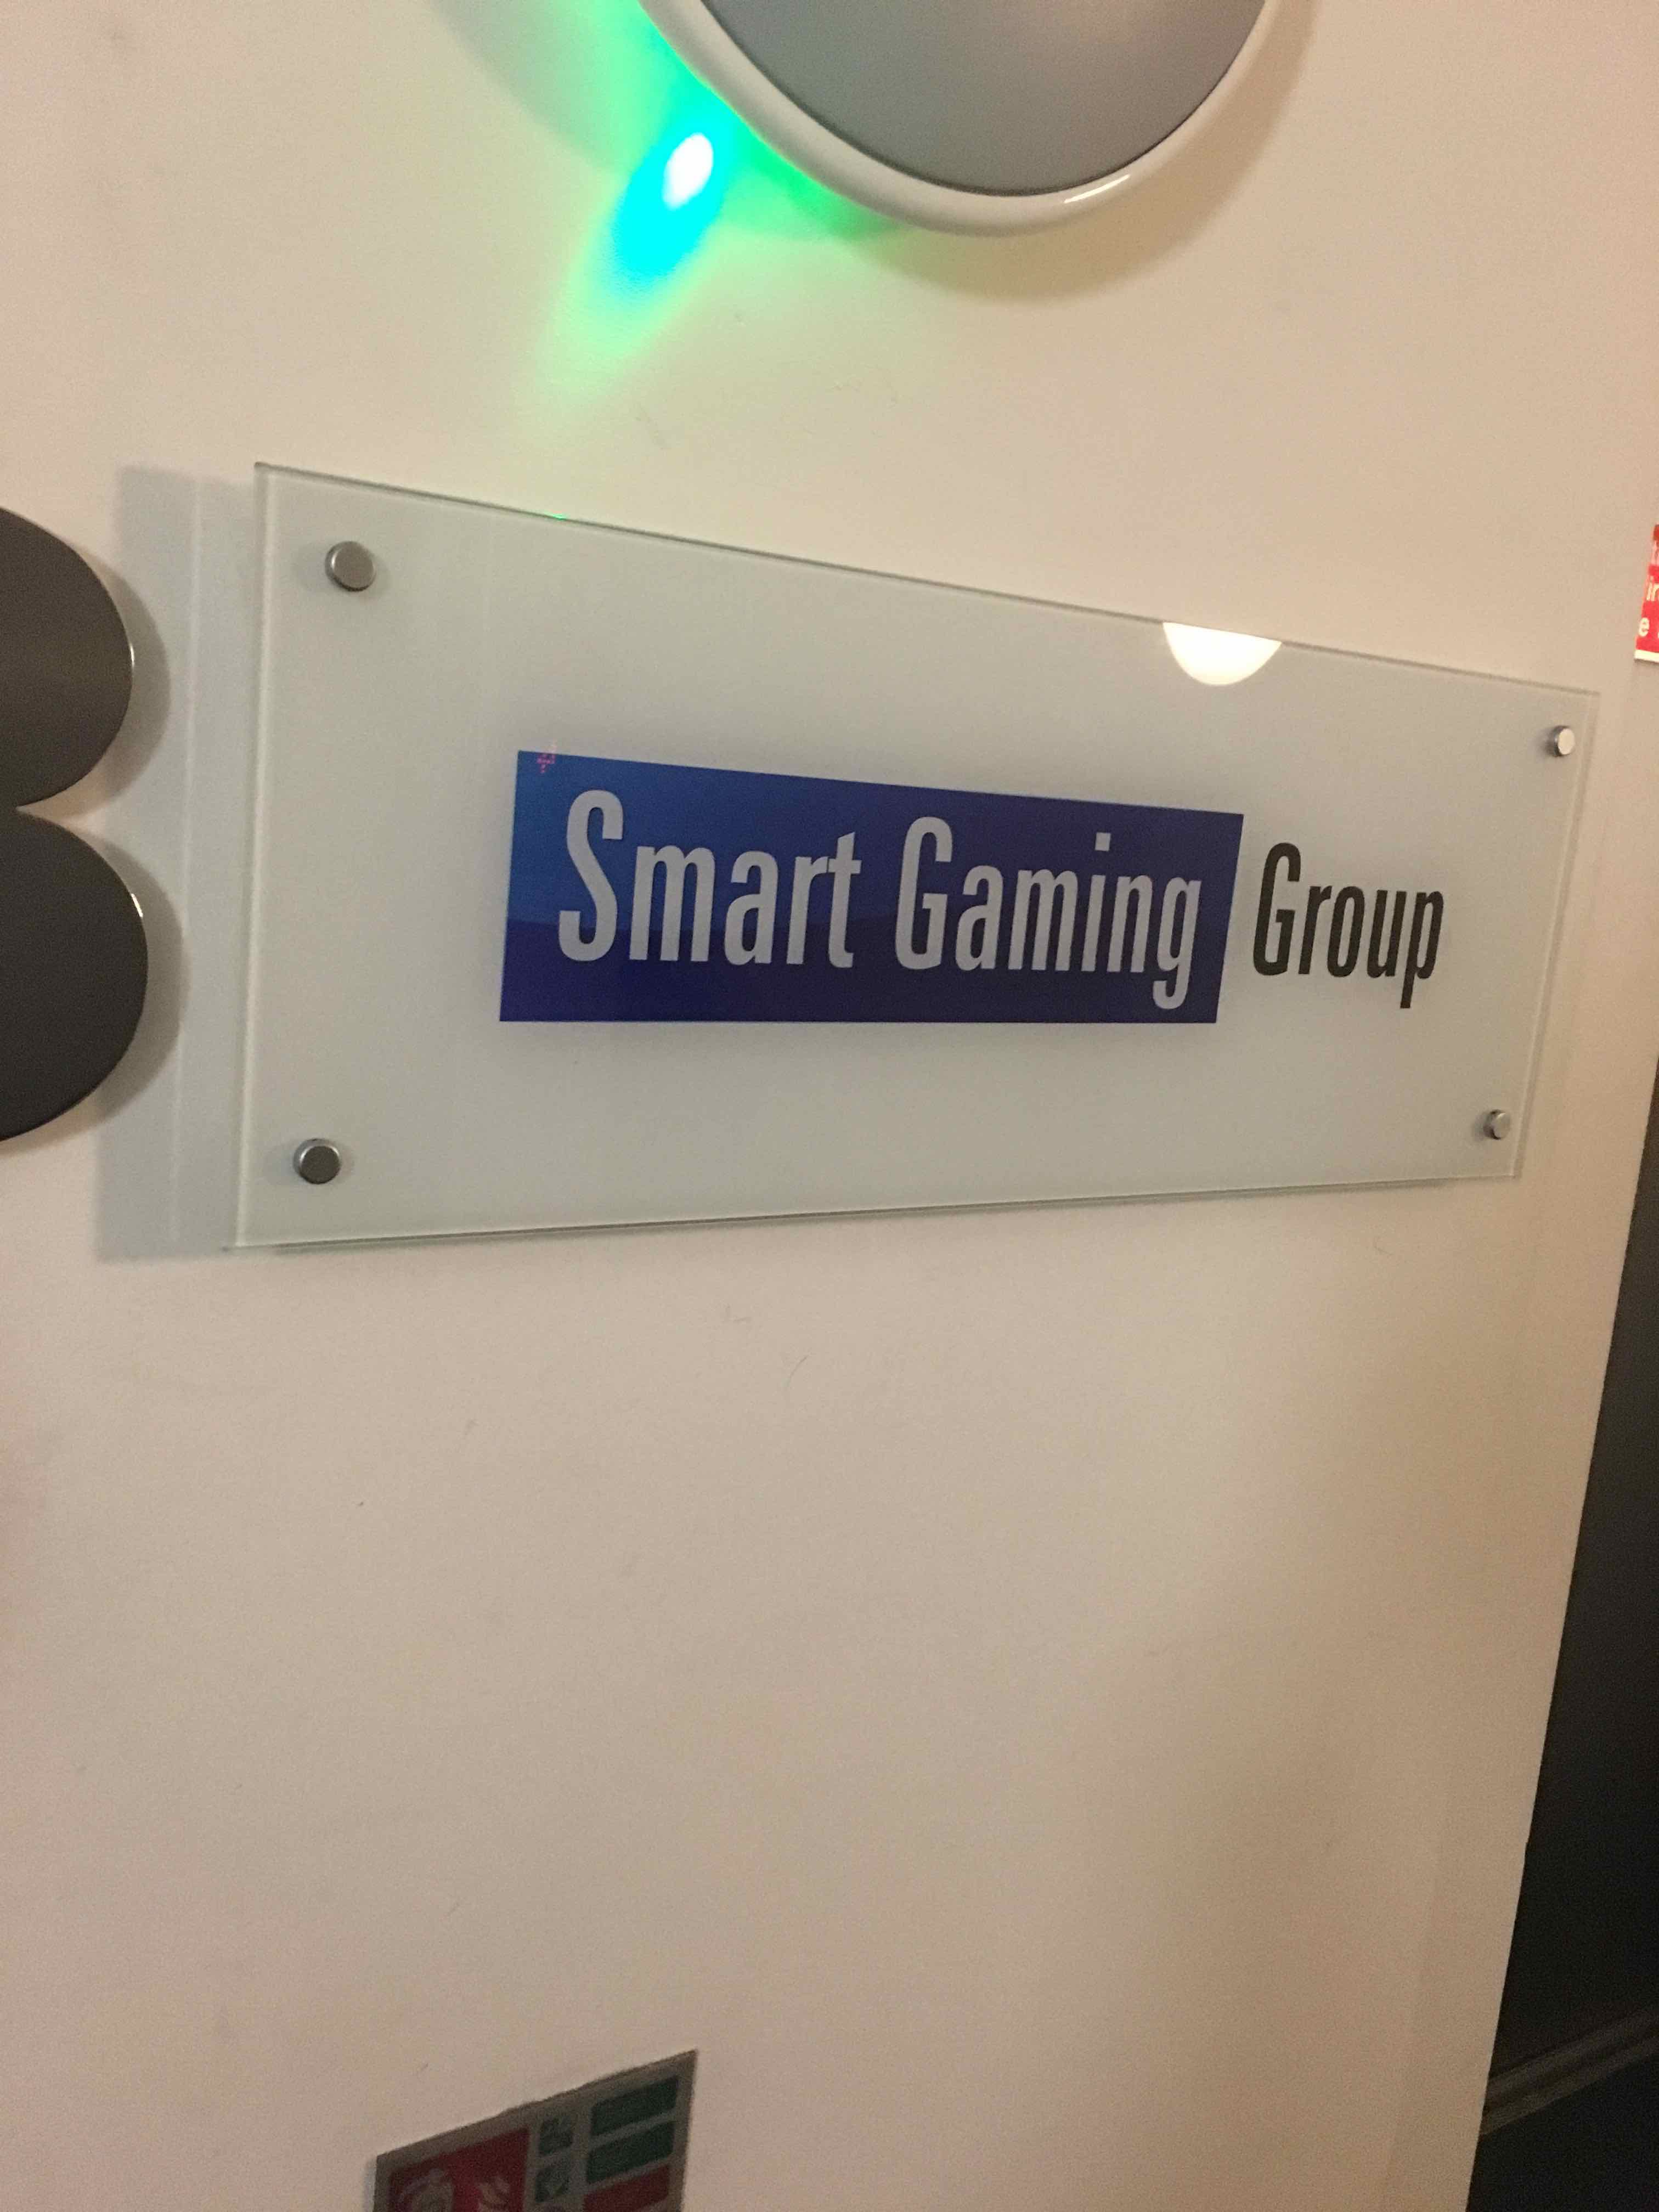 ３階と思われる場所の「Smart Gaming」という表札画像